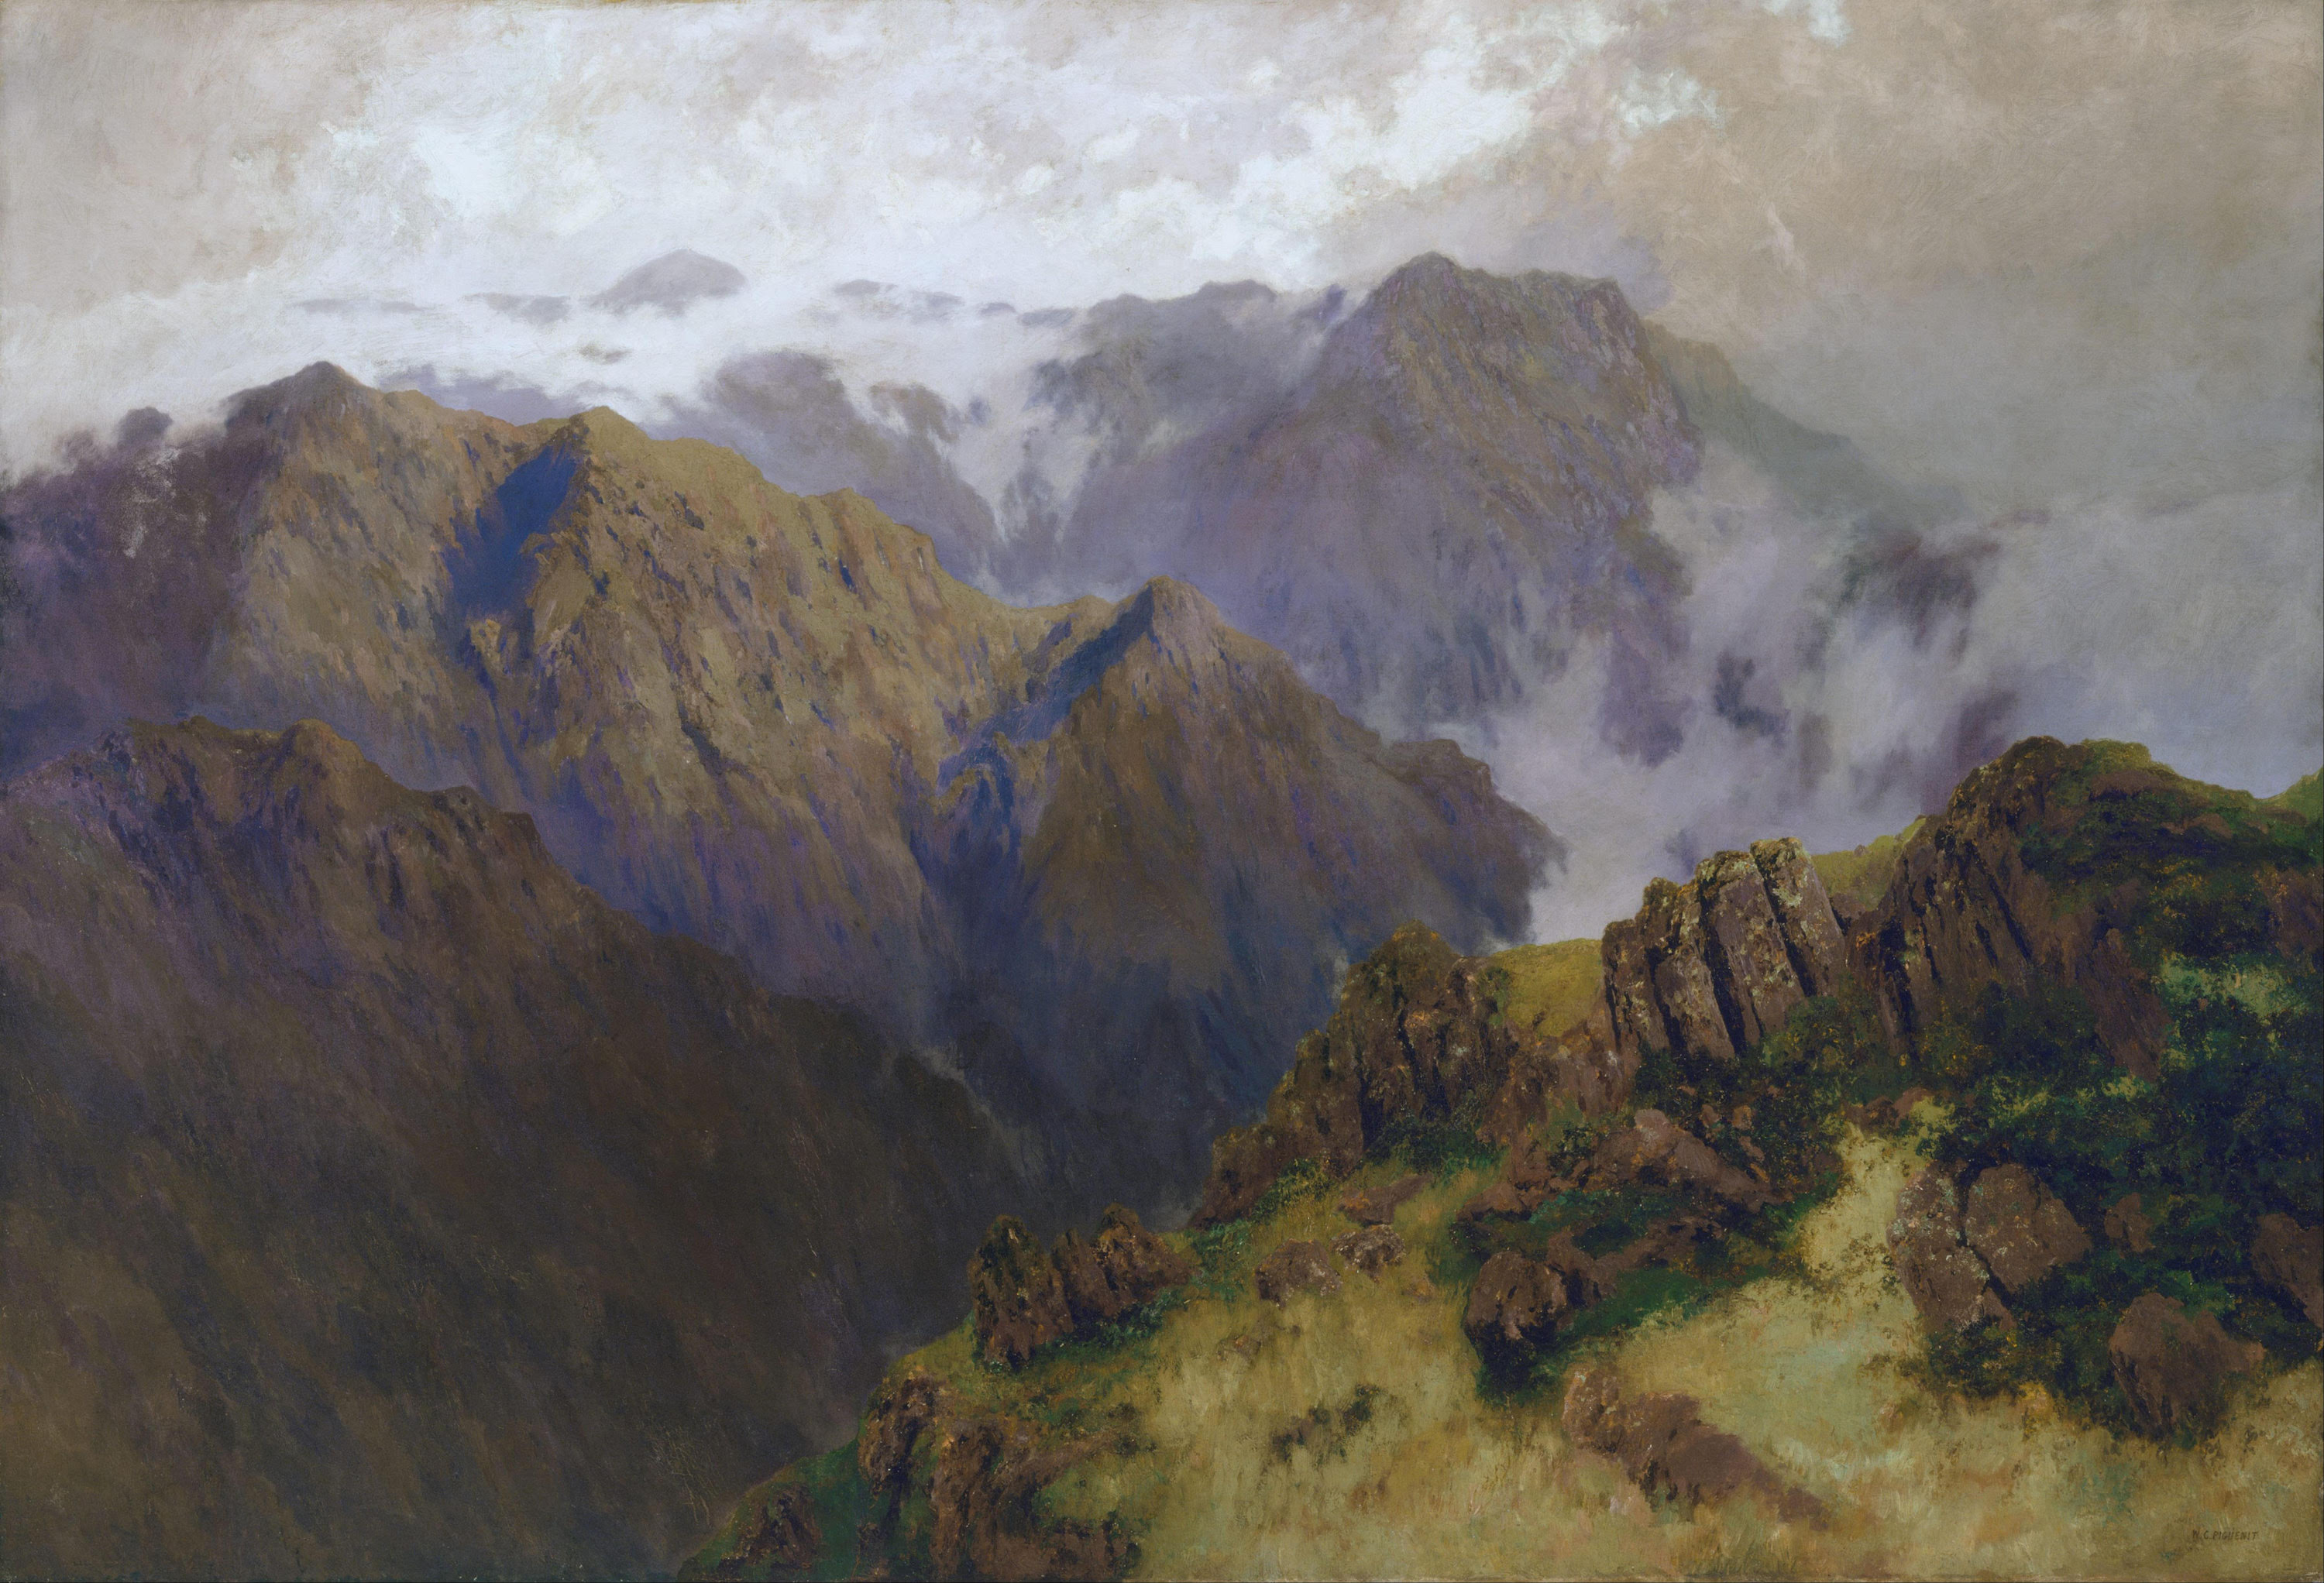 コジオスコ山 by W​illiam Piguenit - 1903年 - 179.2 x 261.6 cm 